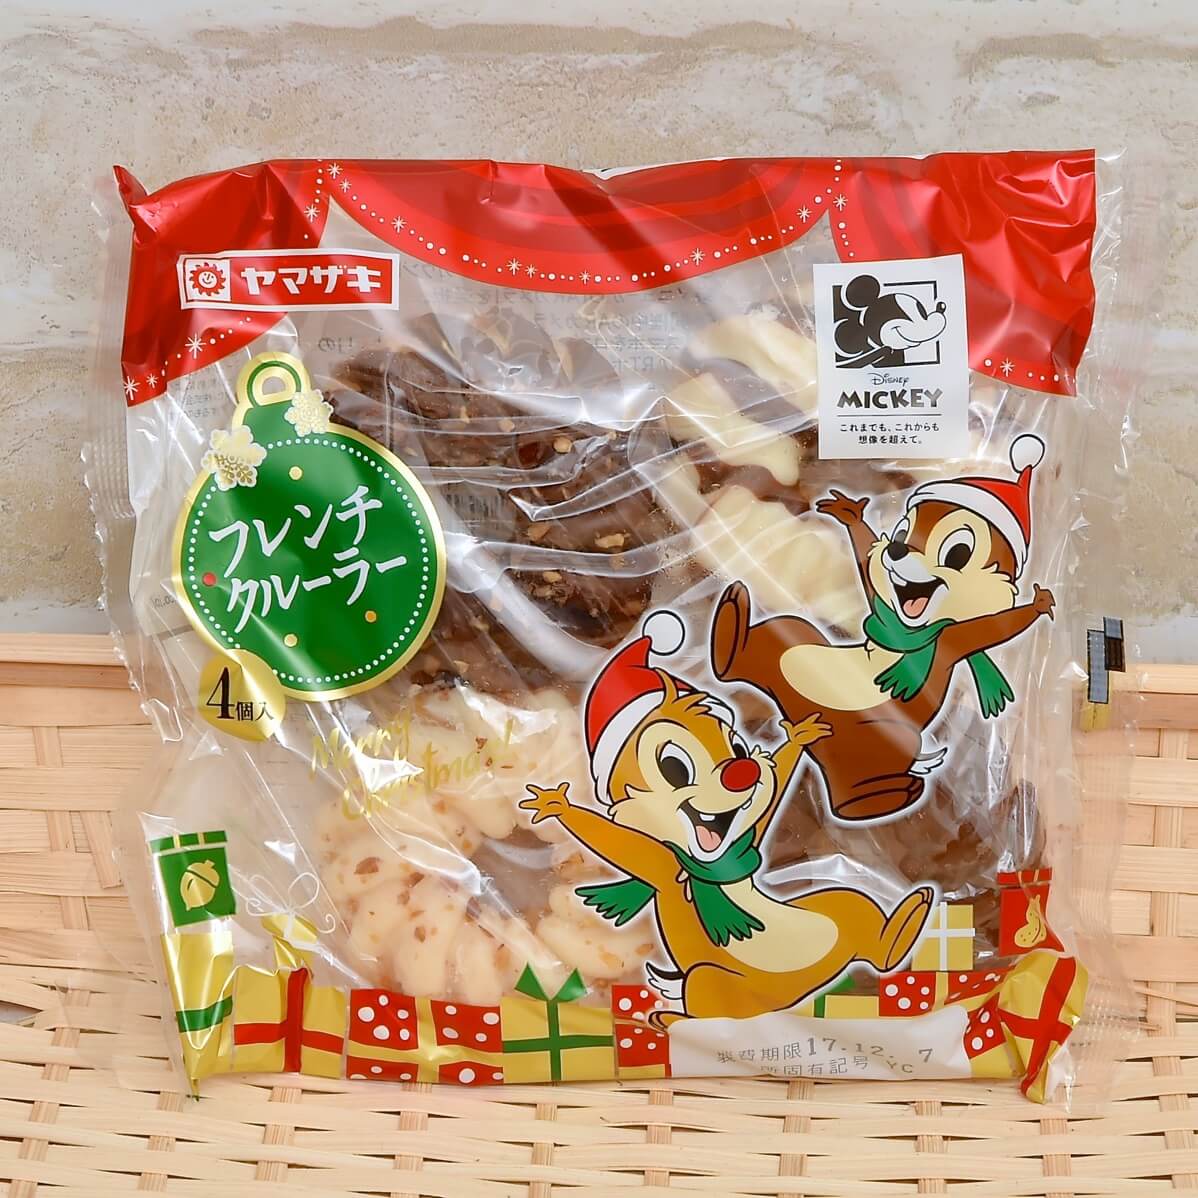 クリスマスを楽しむミッキー フレンズデザイン 山崎製パン ヤマザキ クリスマスパン